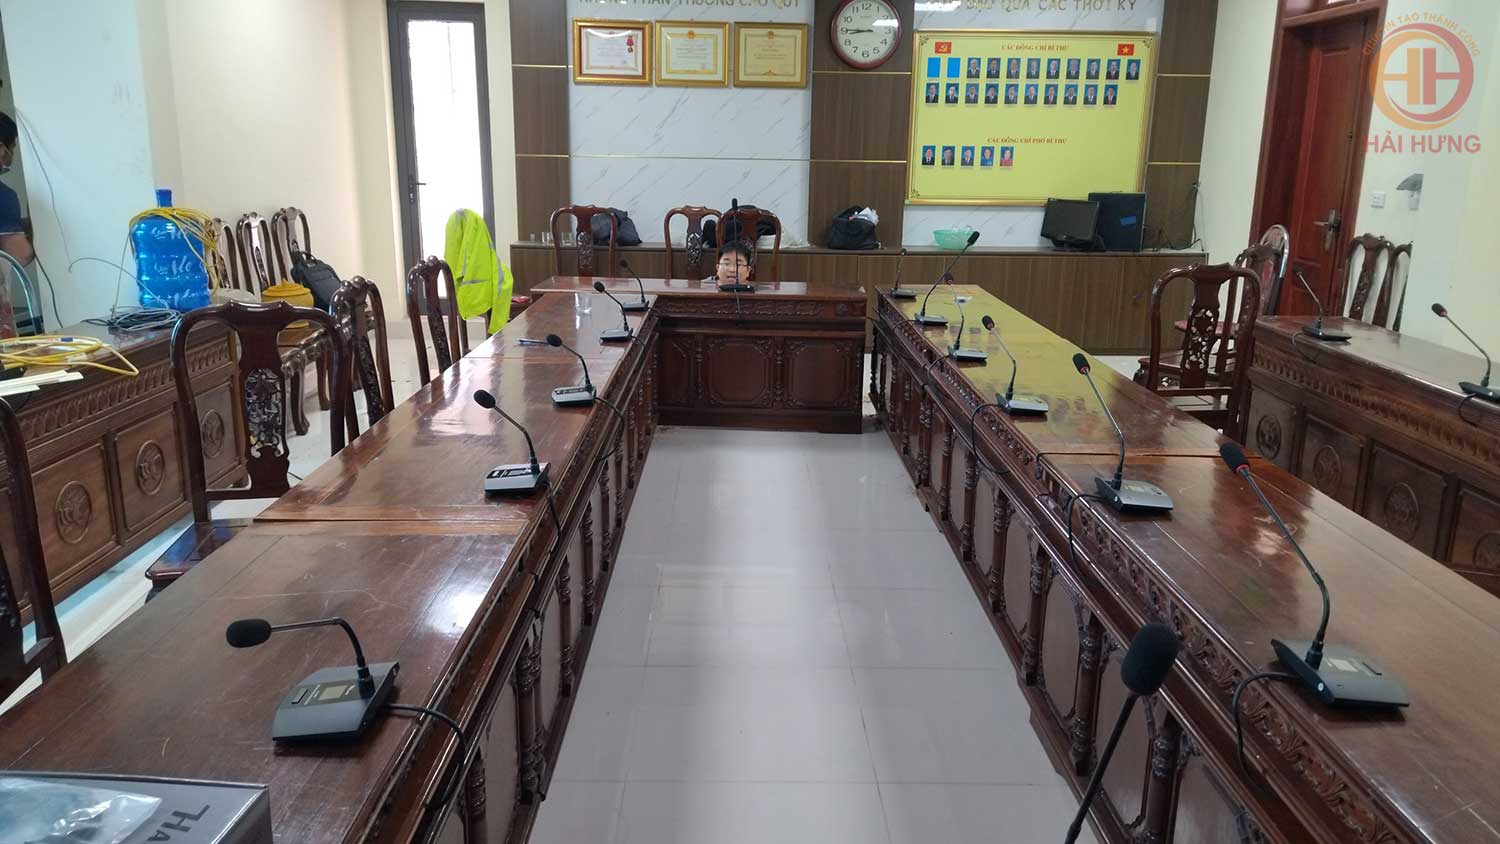 Hải Hưng lắp đặt hệ thống hội thảo HAI-3526M cho Đảng ủy khối các cơ quan và doanh nghiệp tỉnh Bắc Ninh